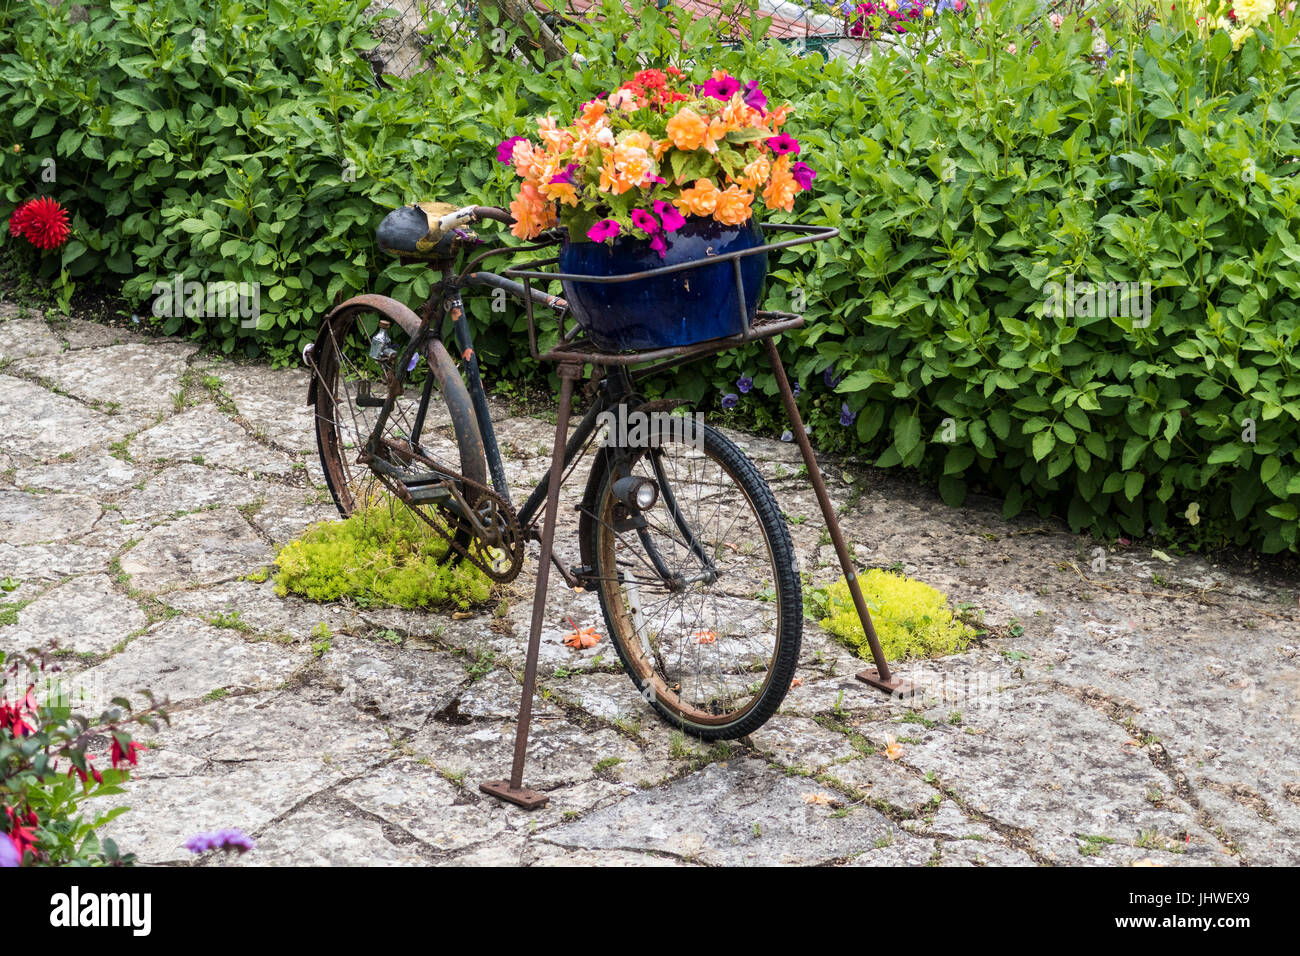 Ein altes rostiges Fahrrad verwendet als Blume Container, Blumentopf, Blütenpracht. Stockfoto